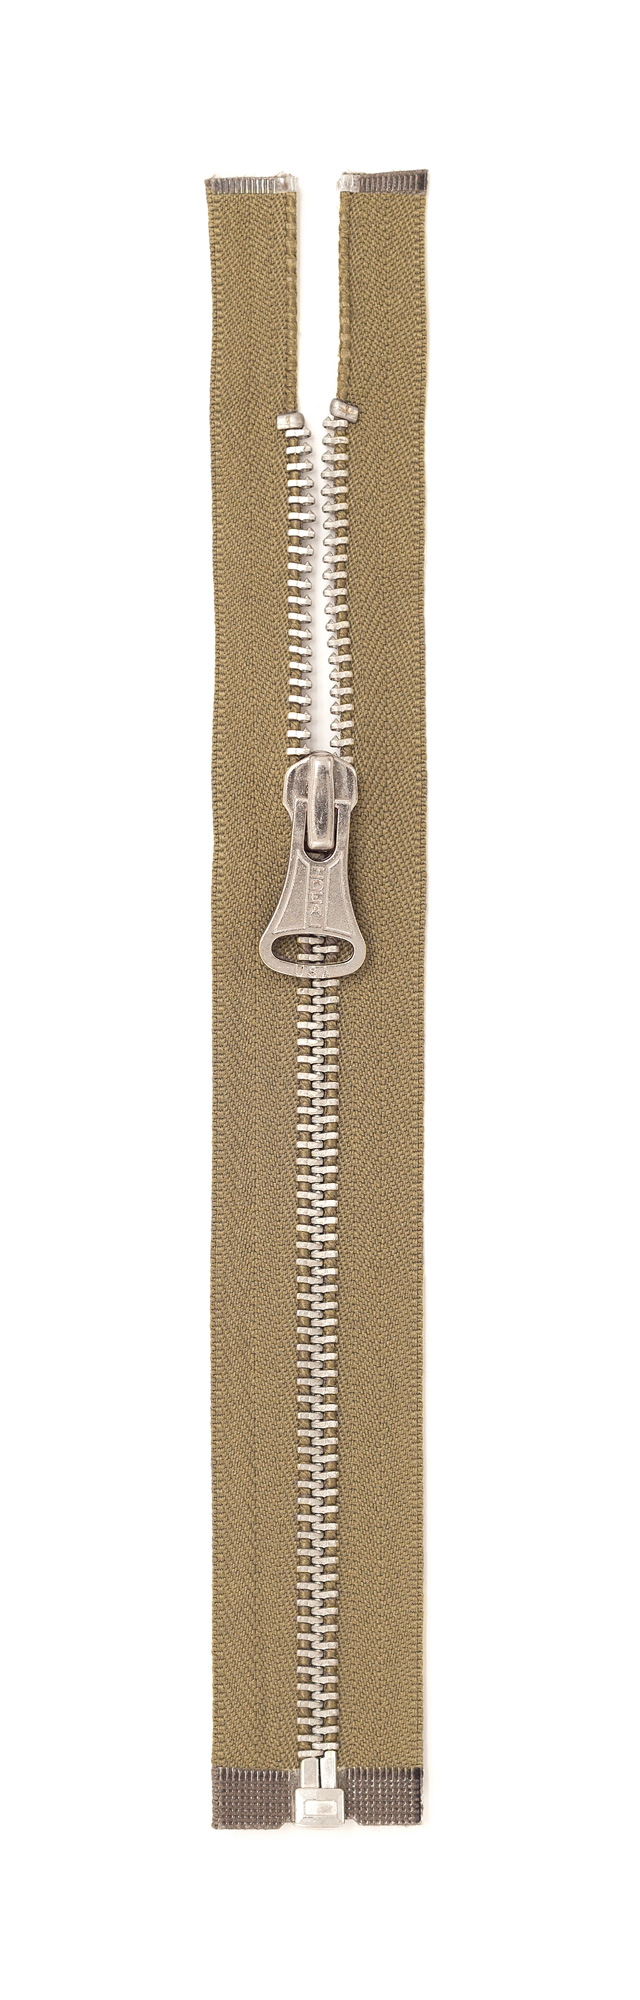 https://billkelsomfg.com/shop/wp-content/uploads/2019/04/Zipper-Modern-reproduction-Conmar-Ideal-Nickel.jpg